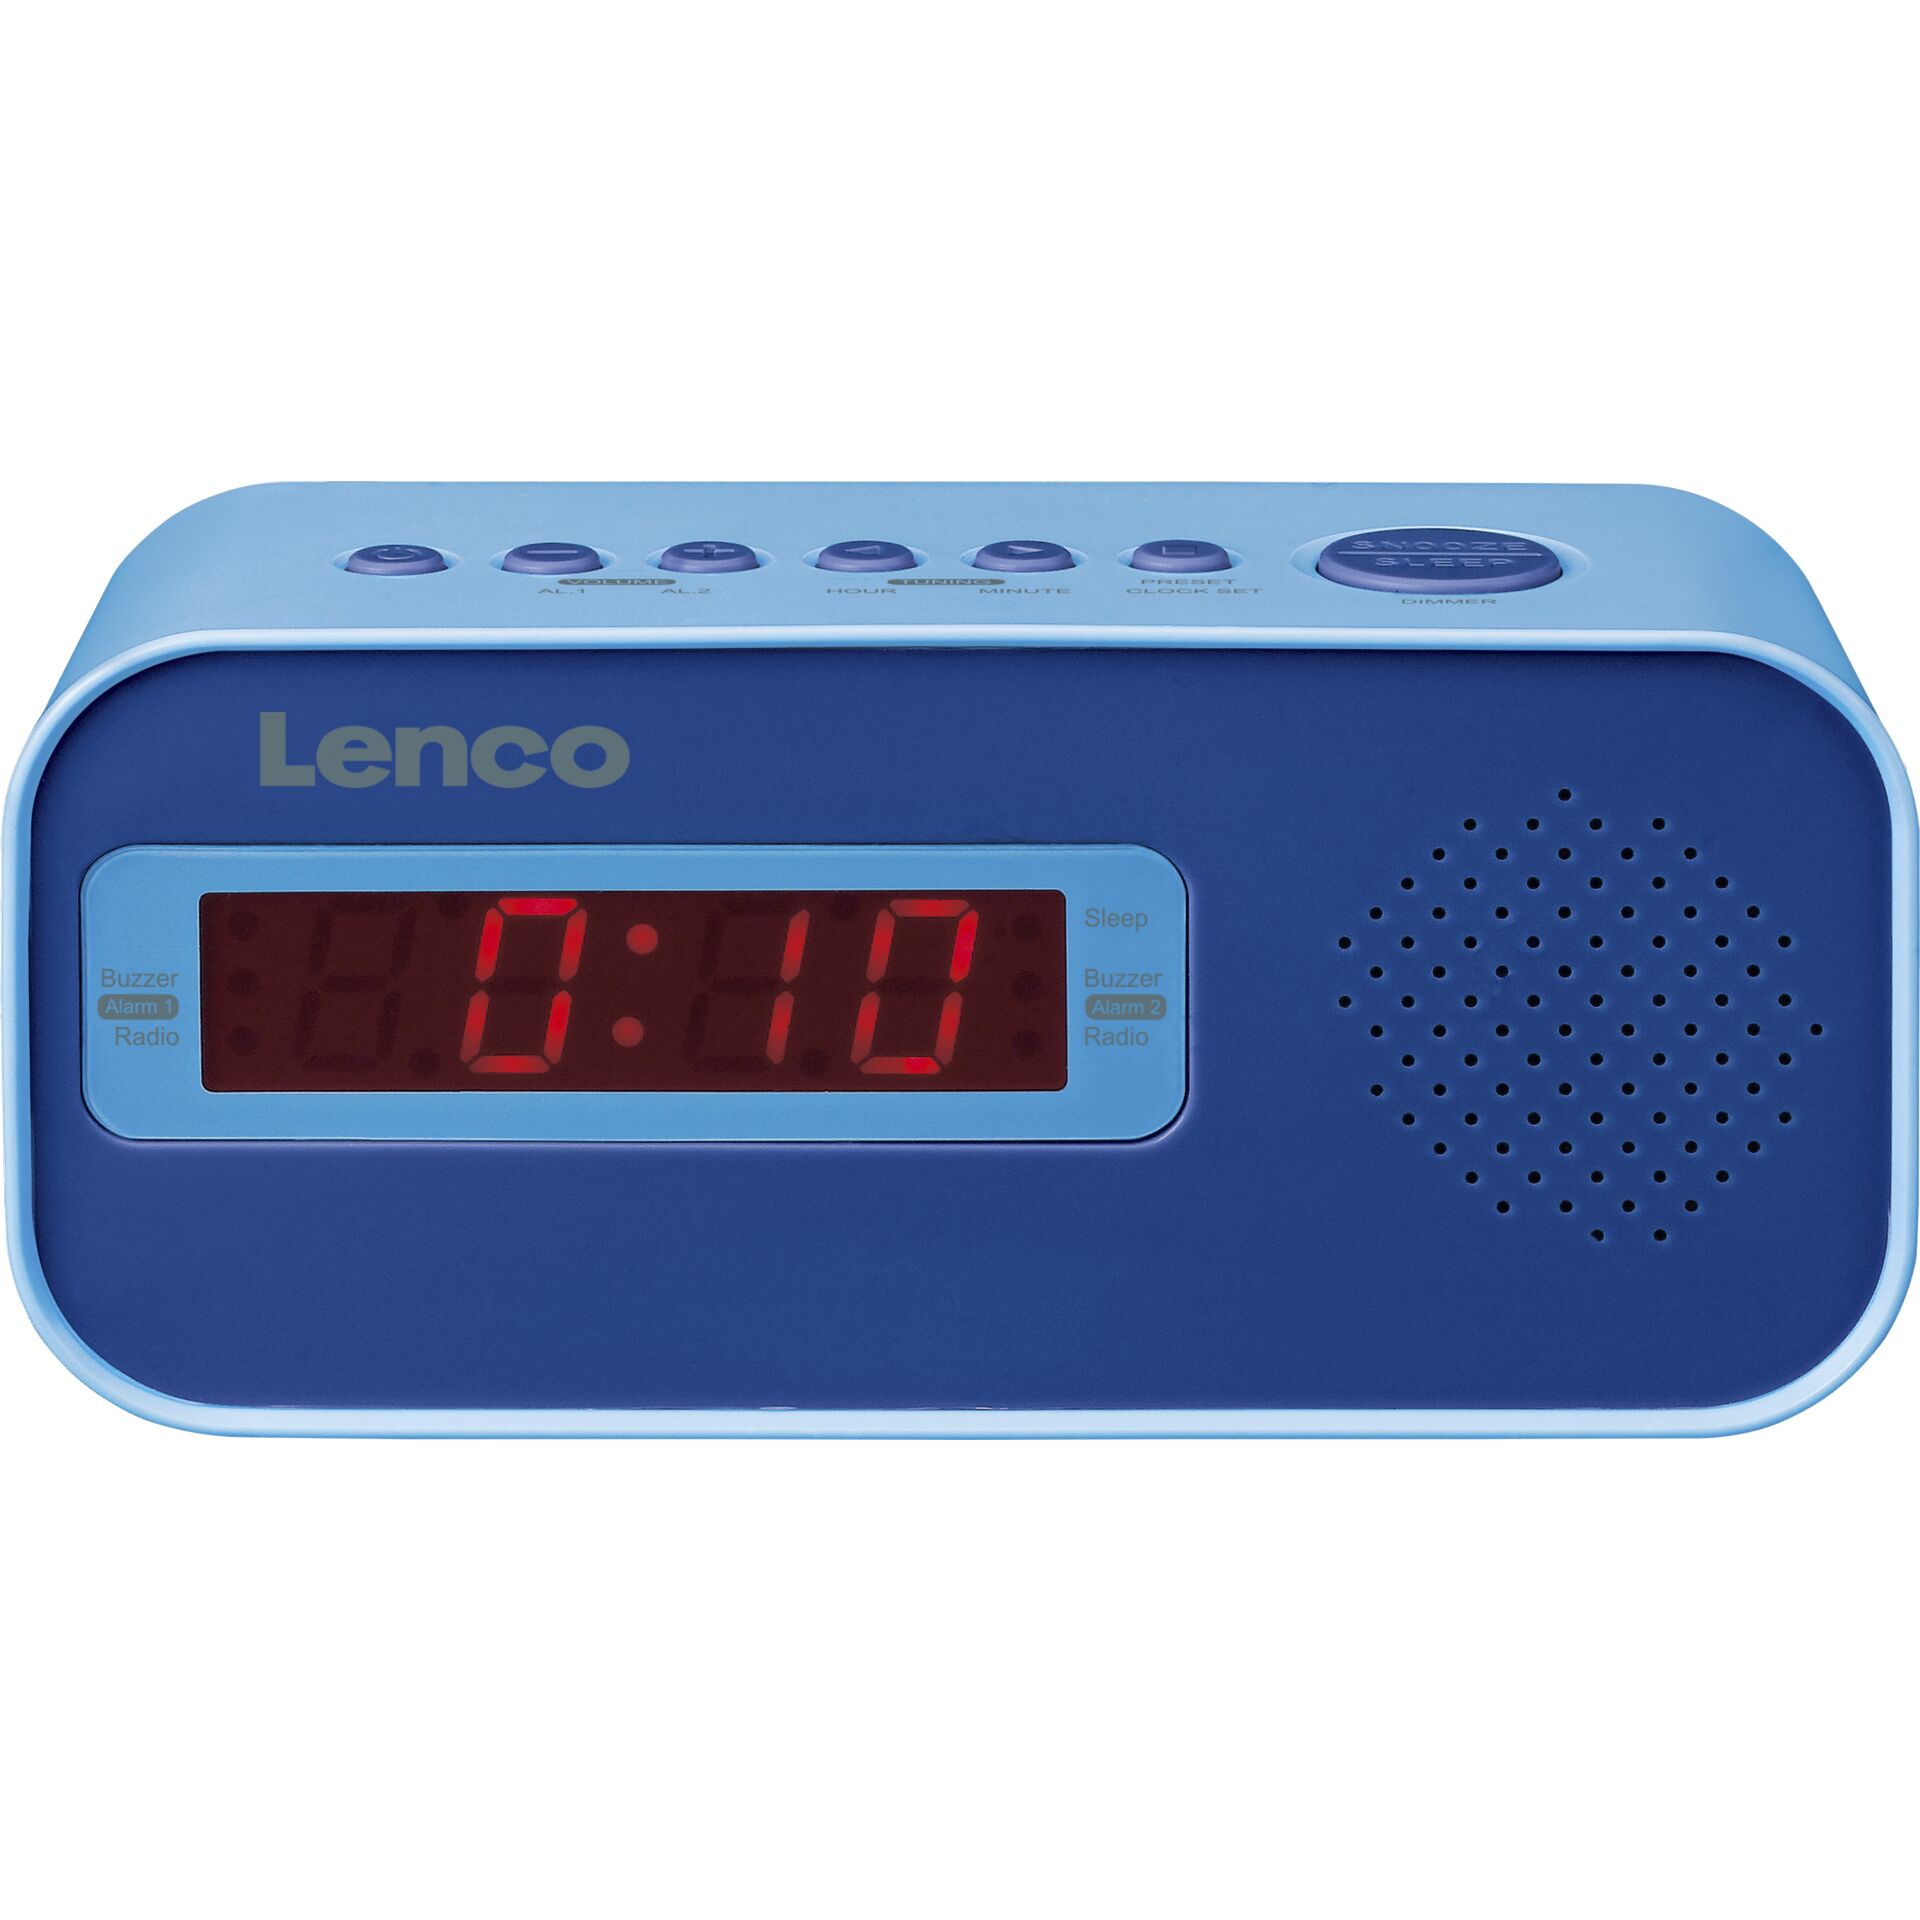 Lenco -CR-205 blau -Lenco Hardware/Electronic